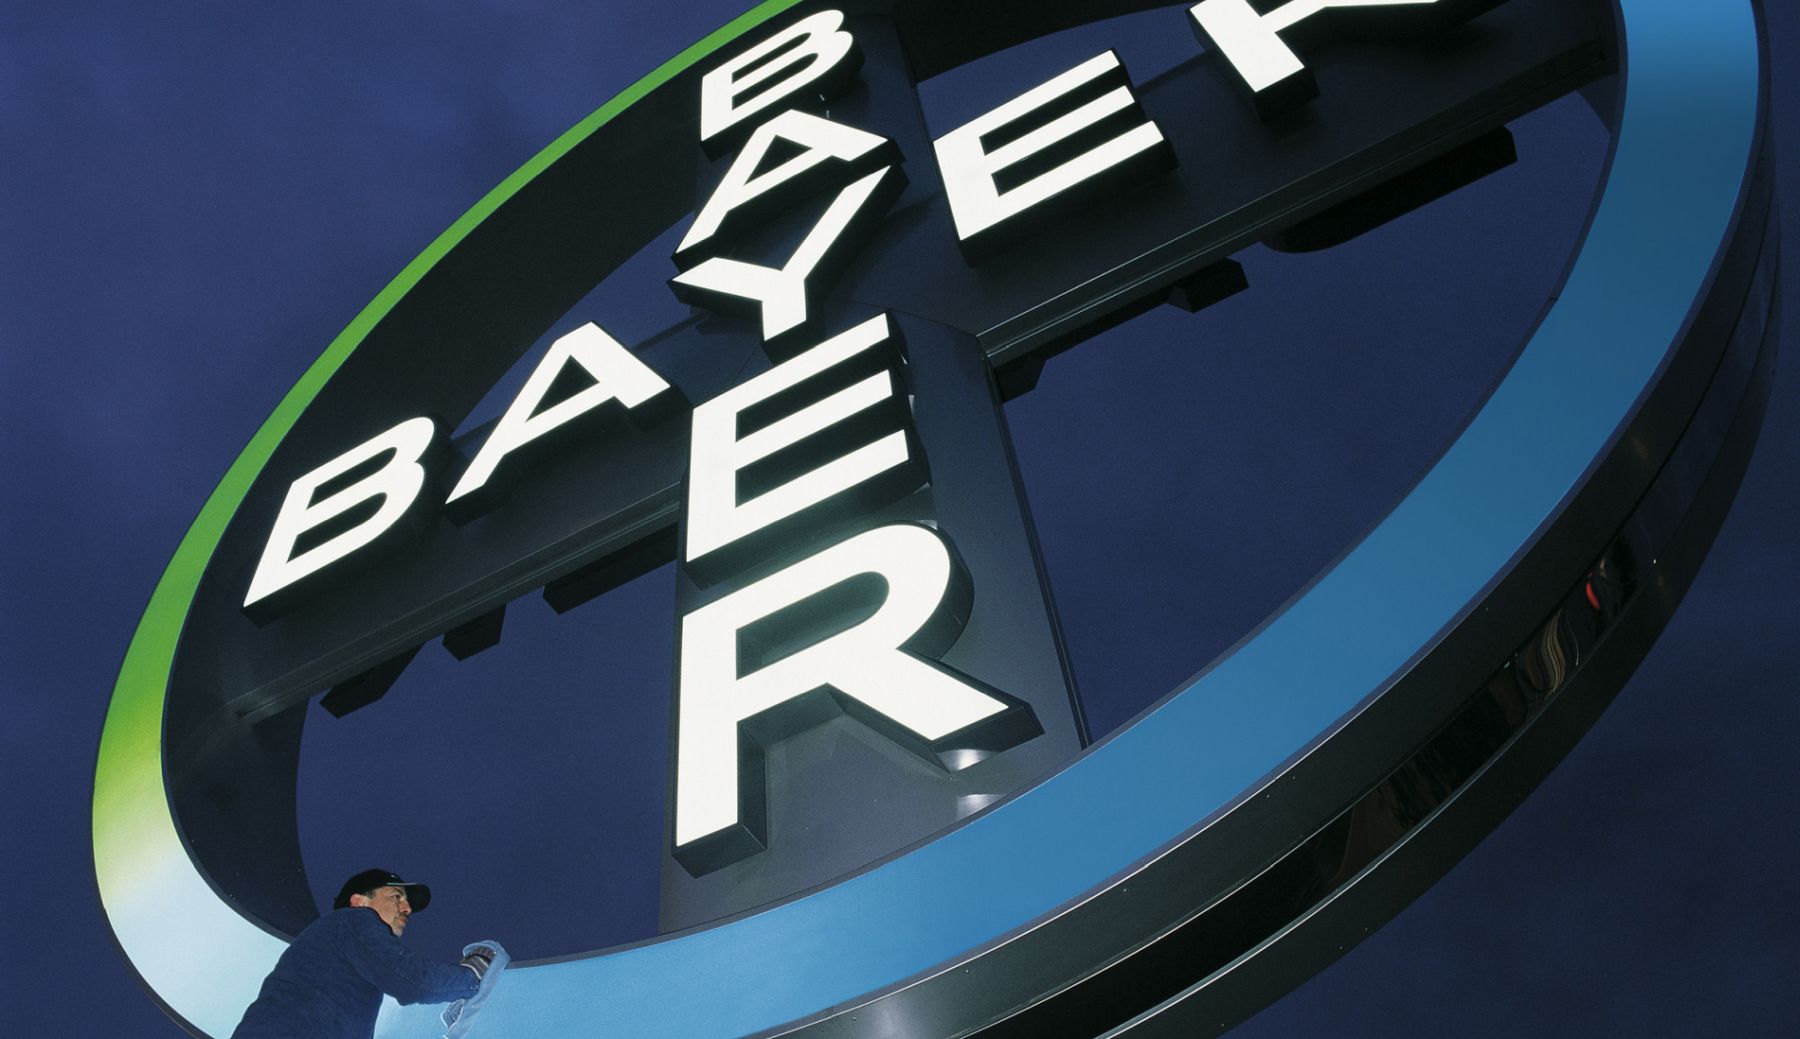 Iznosi odšteta i nagodba potencijalno veći od godišnje dobiti Bayera: izvješće